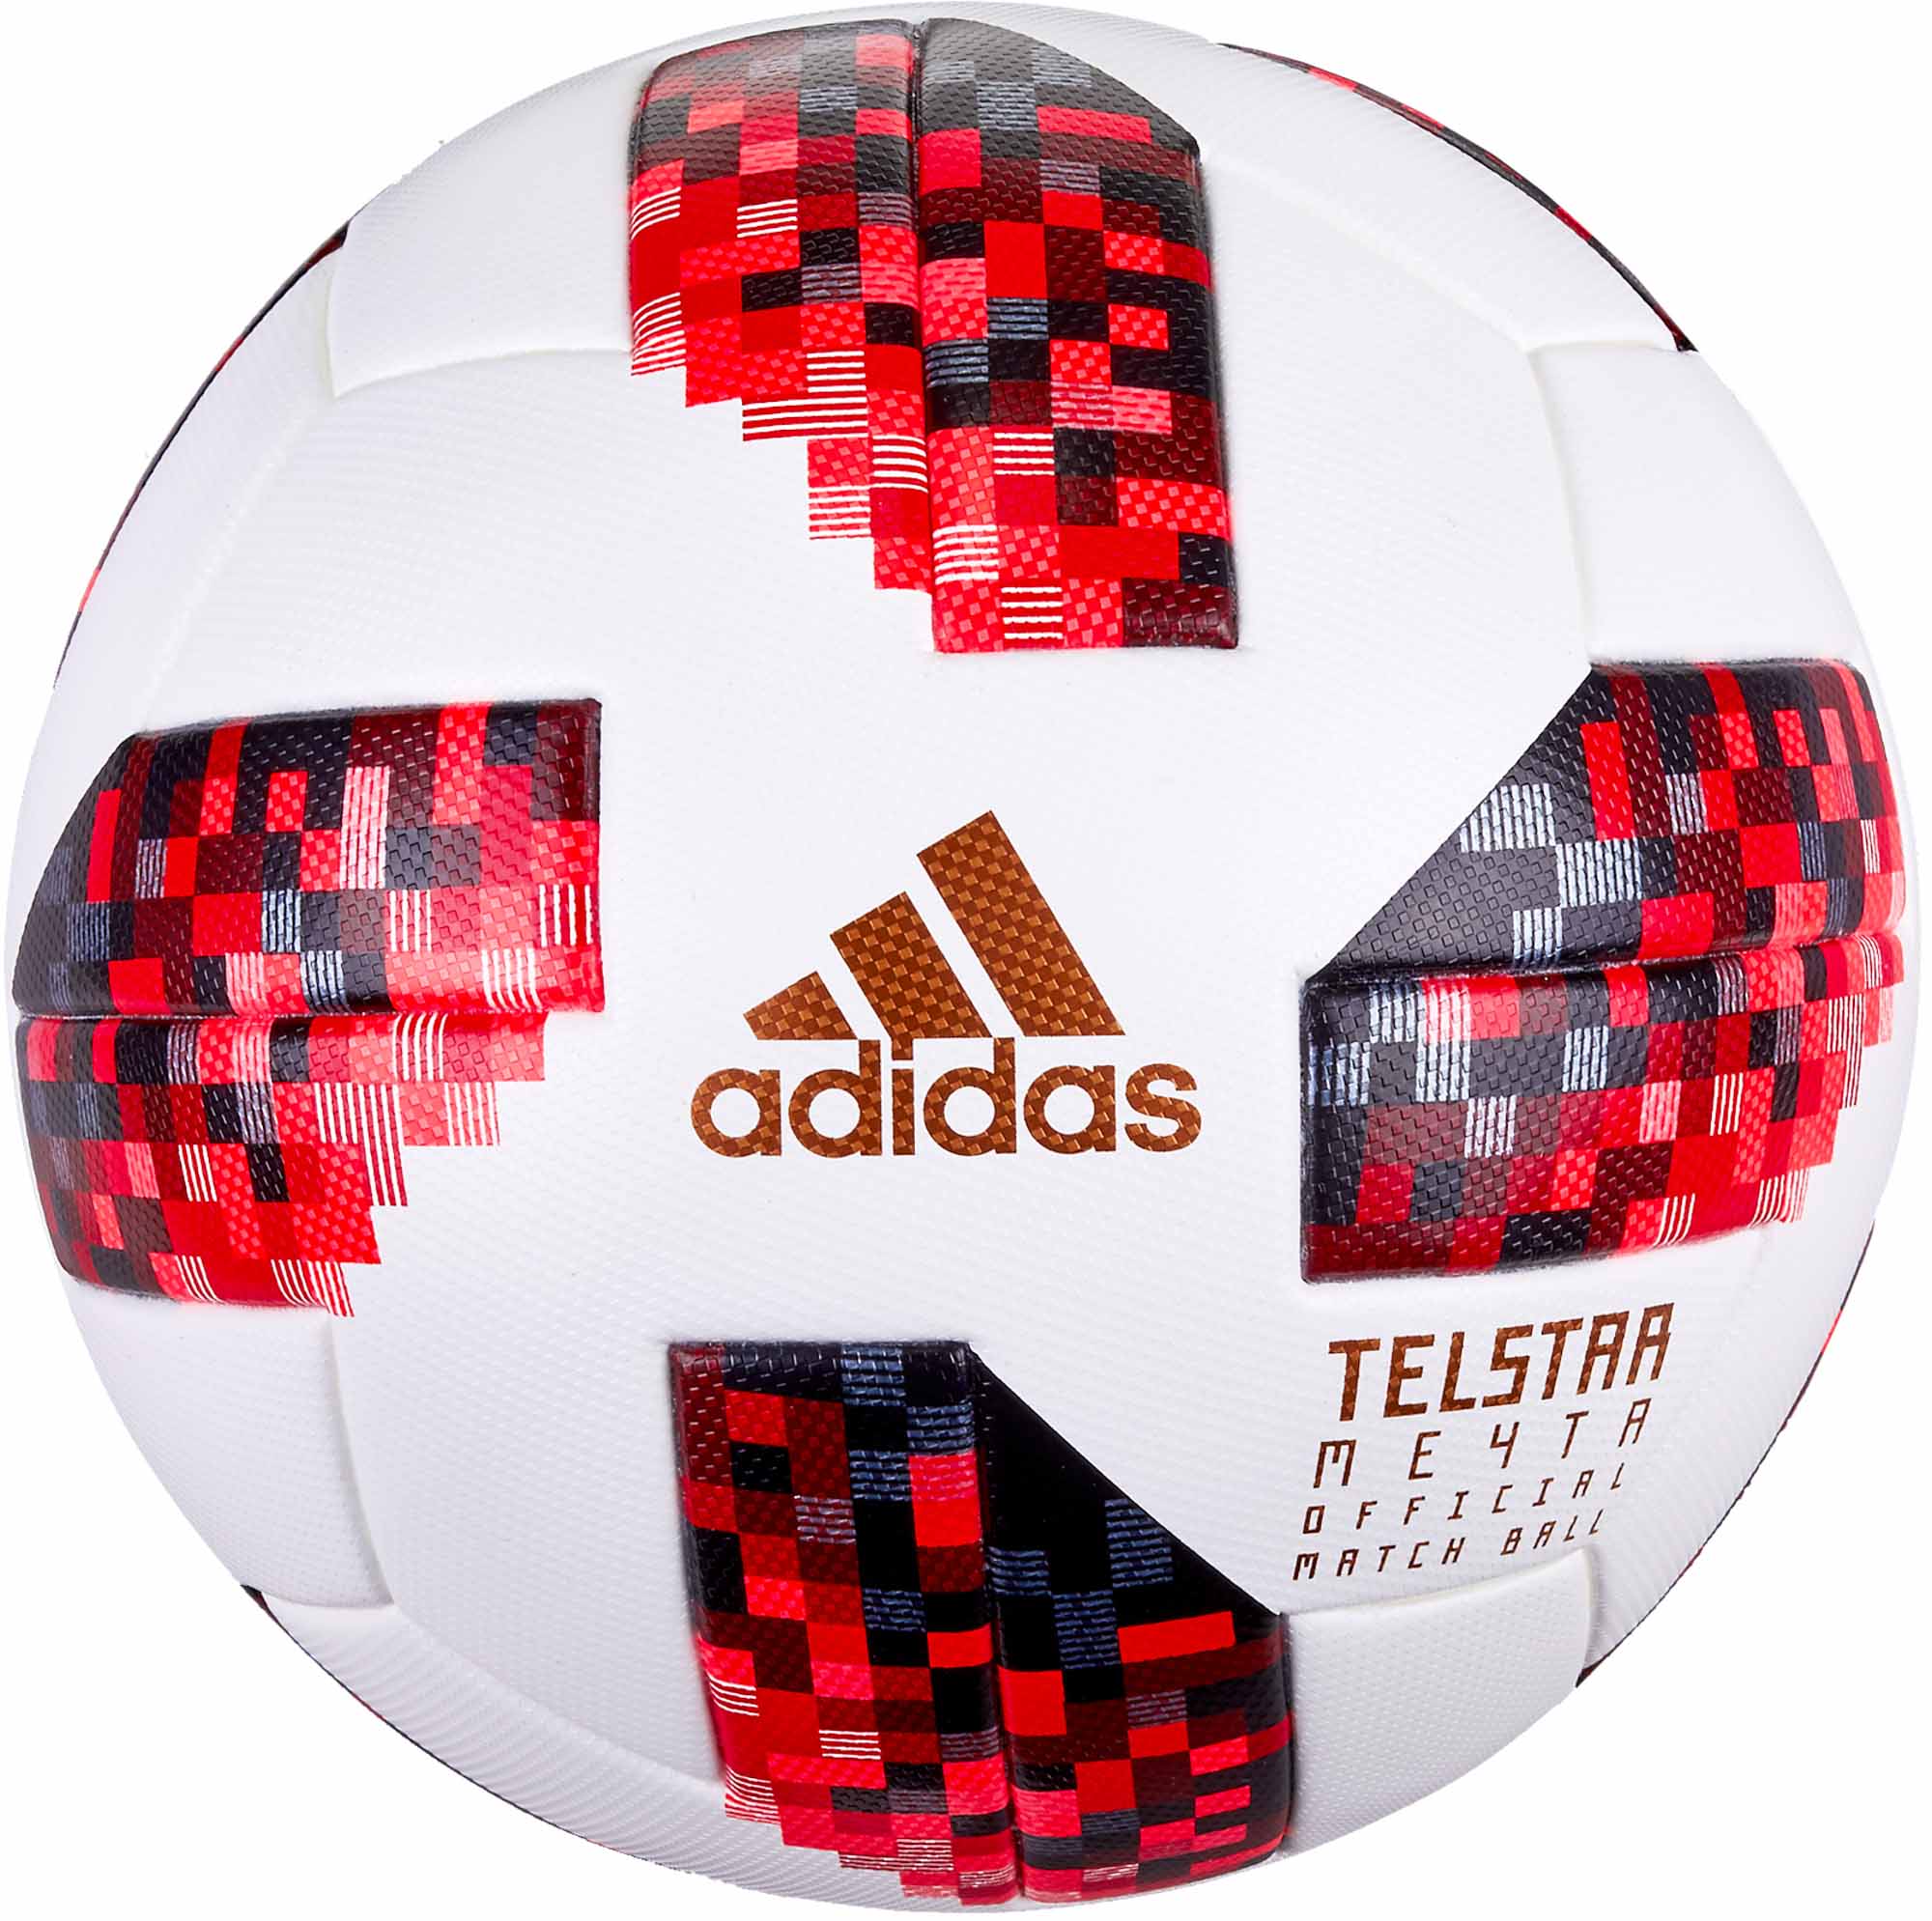 adidas official world cup 2018 telstar 18